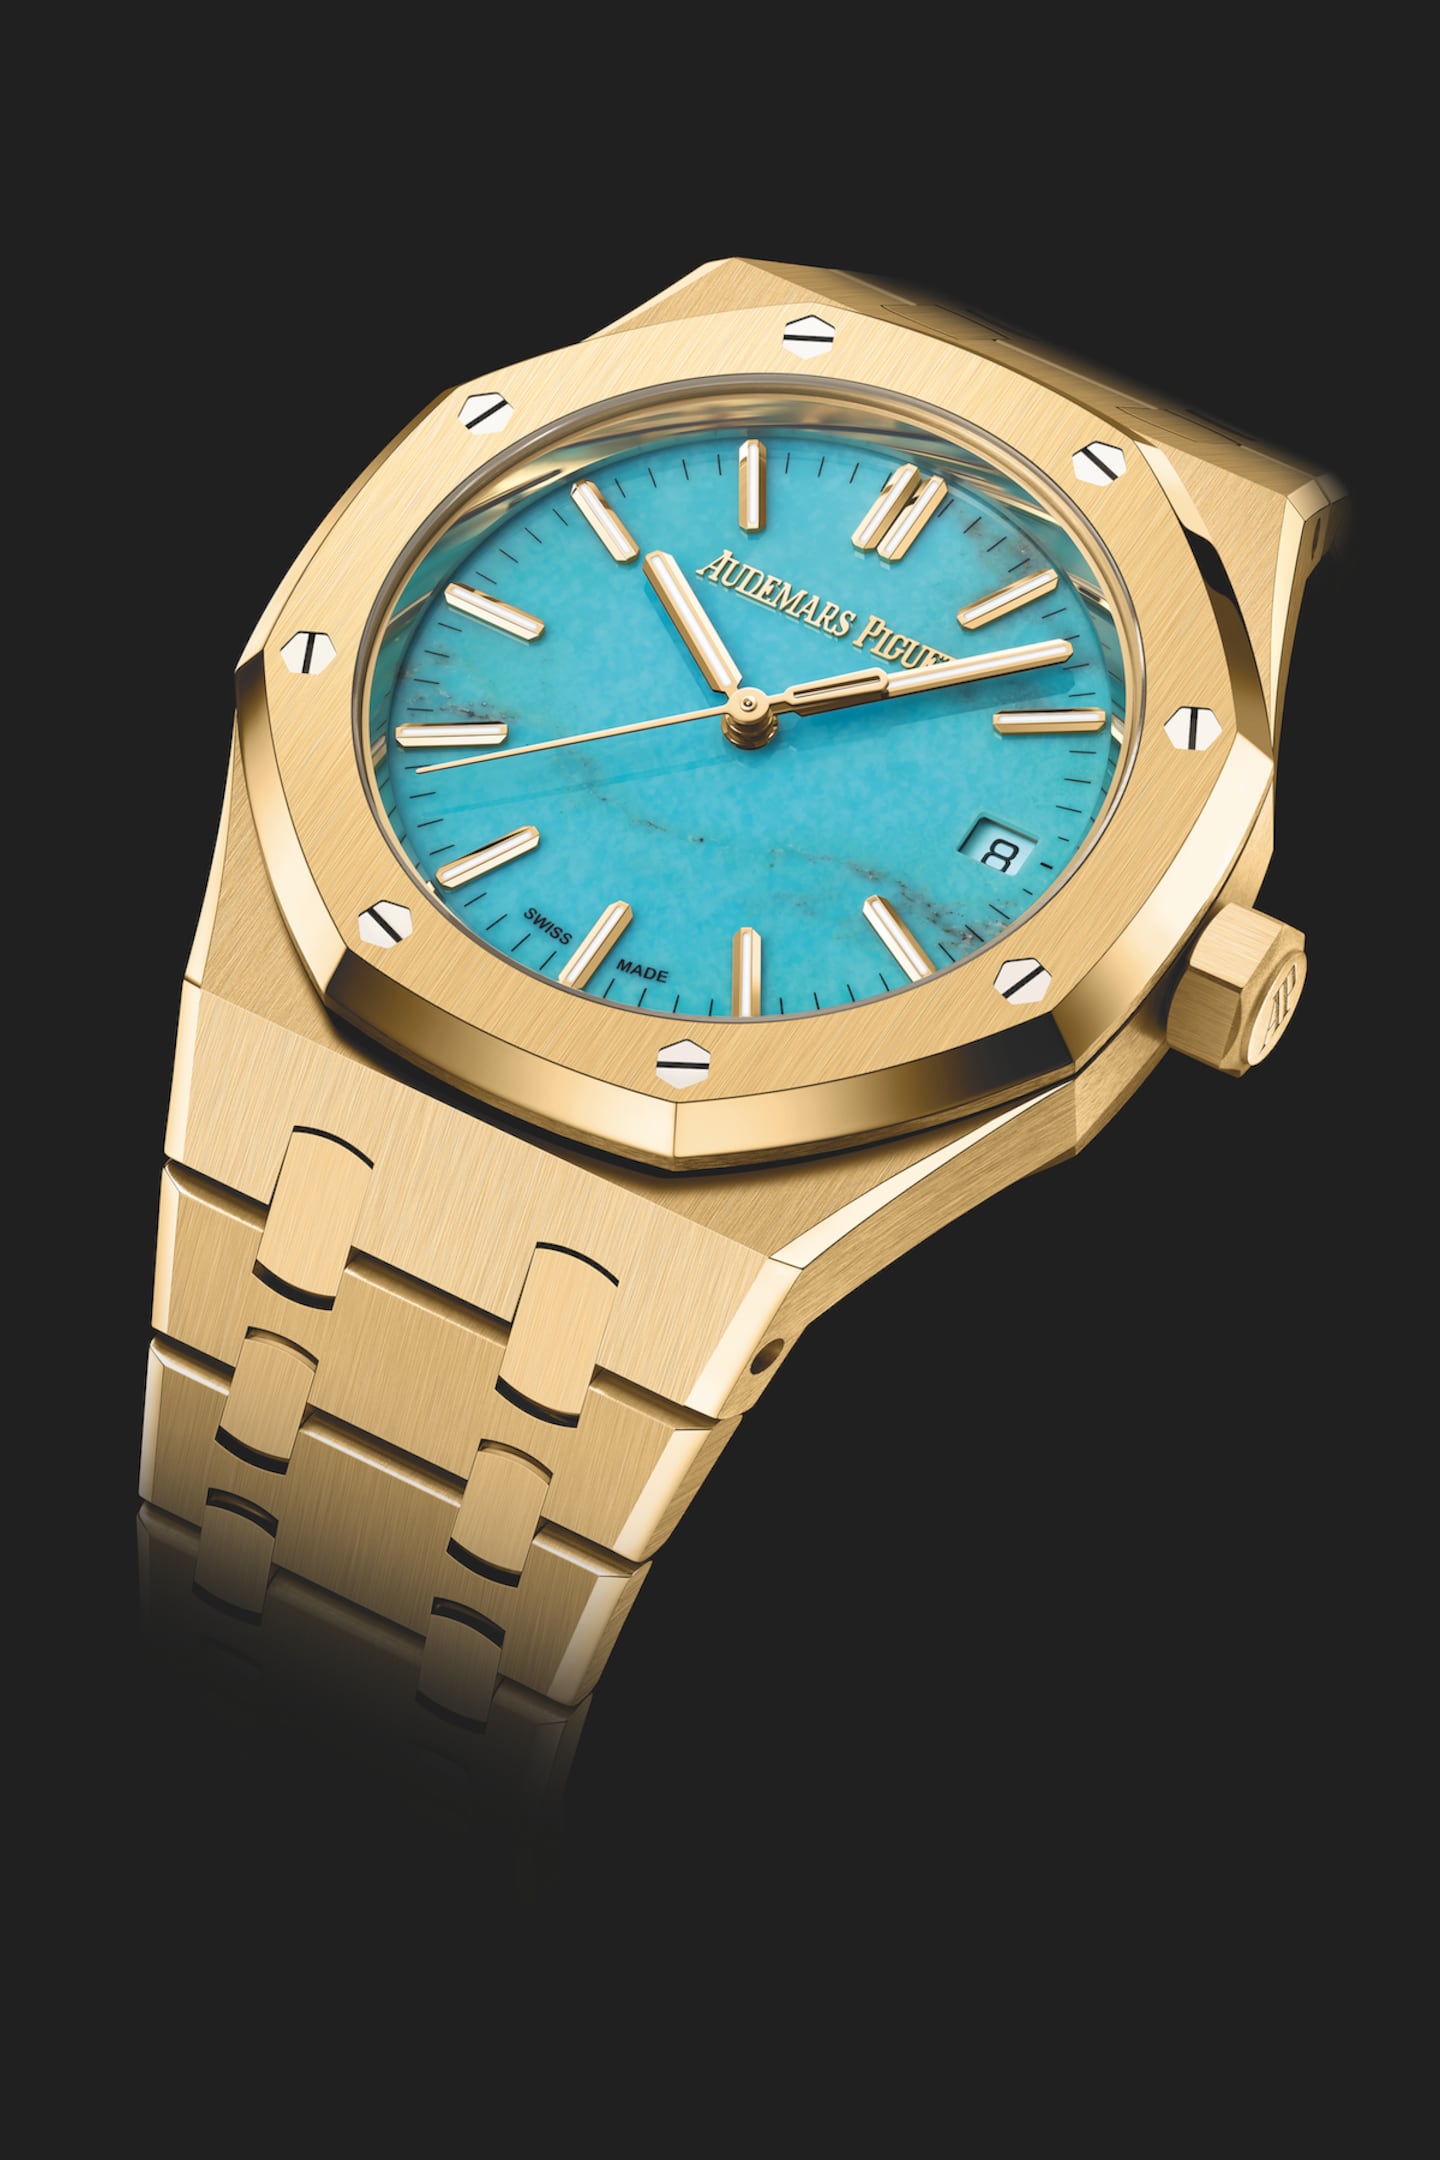 A gold Audemars Piguet Royal Oak watch